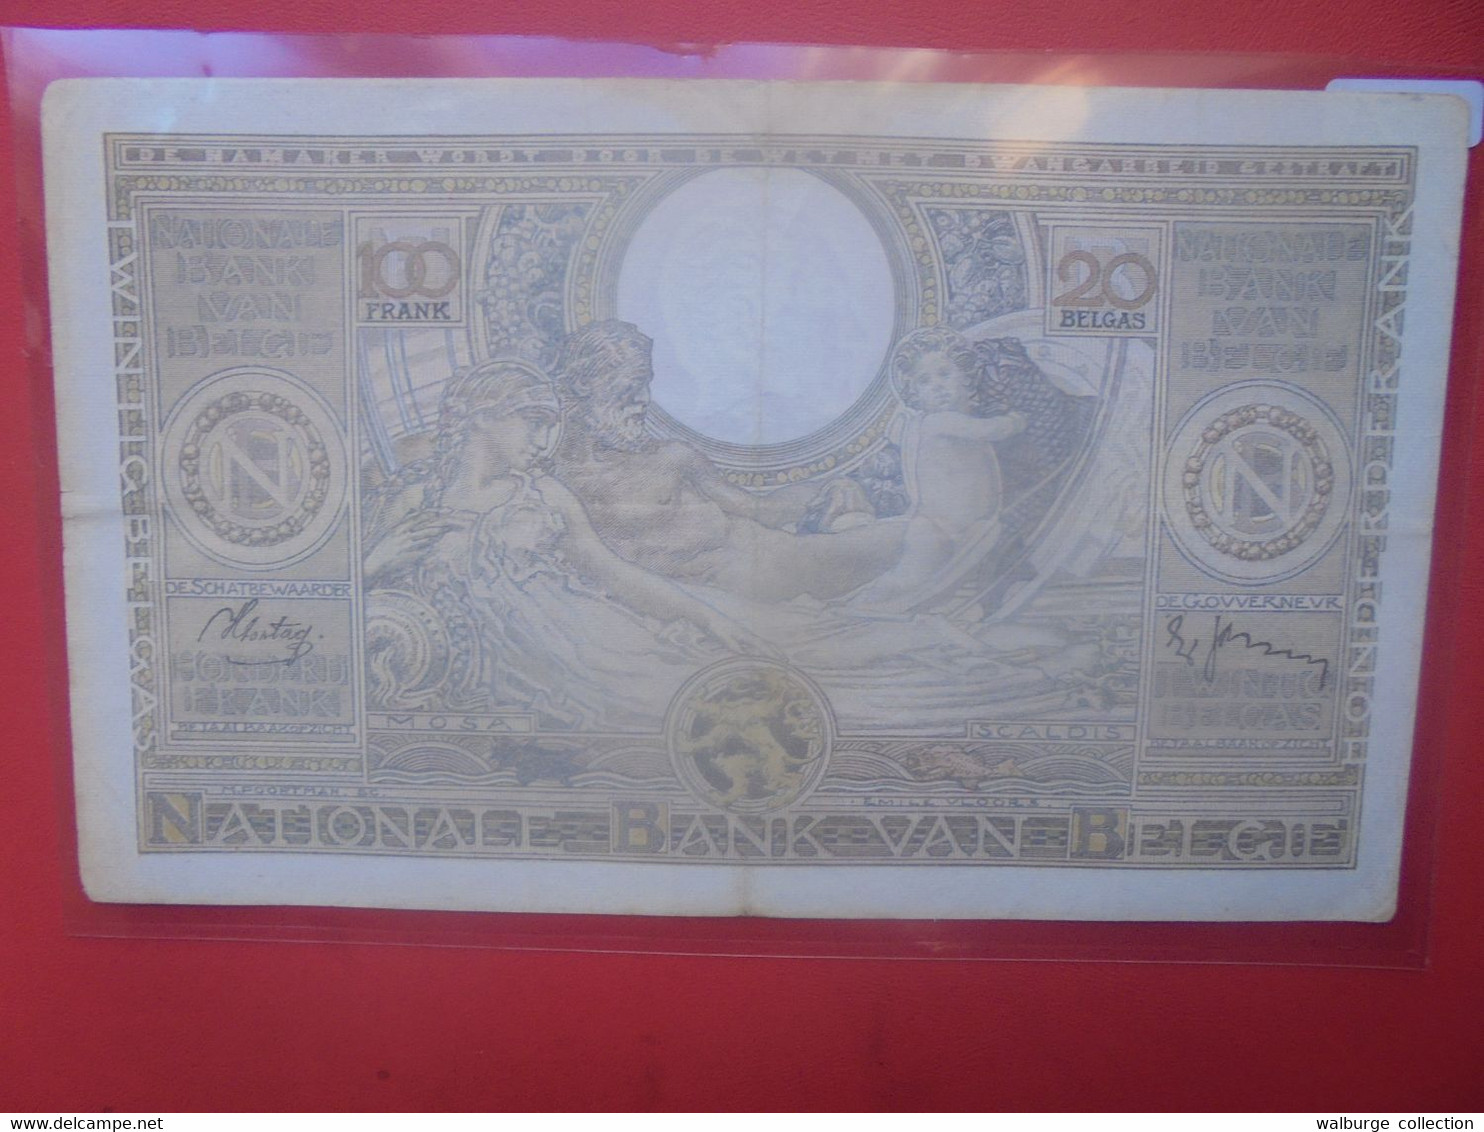 BELGIQUE 100 FRANCS 1938 Circuler (B.27) - 100 Francs & 100 Francs-20 Belgas